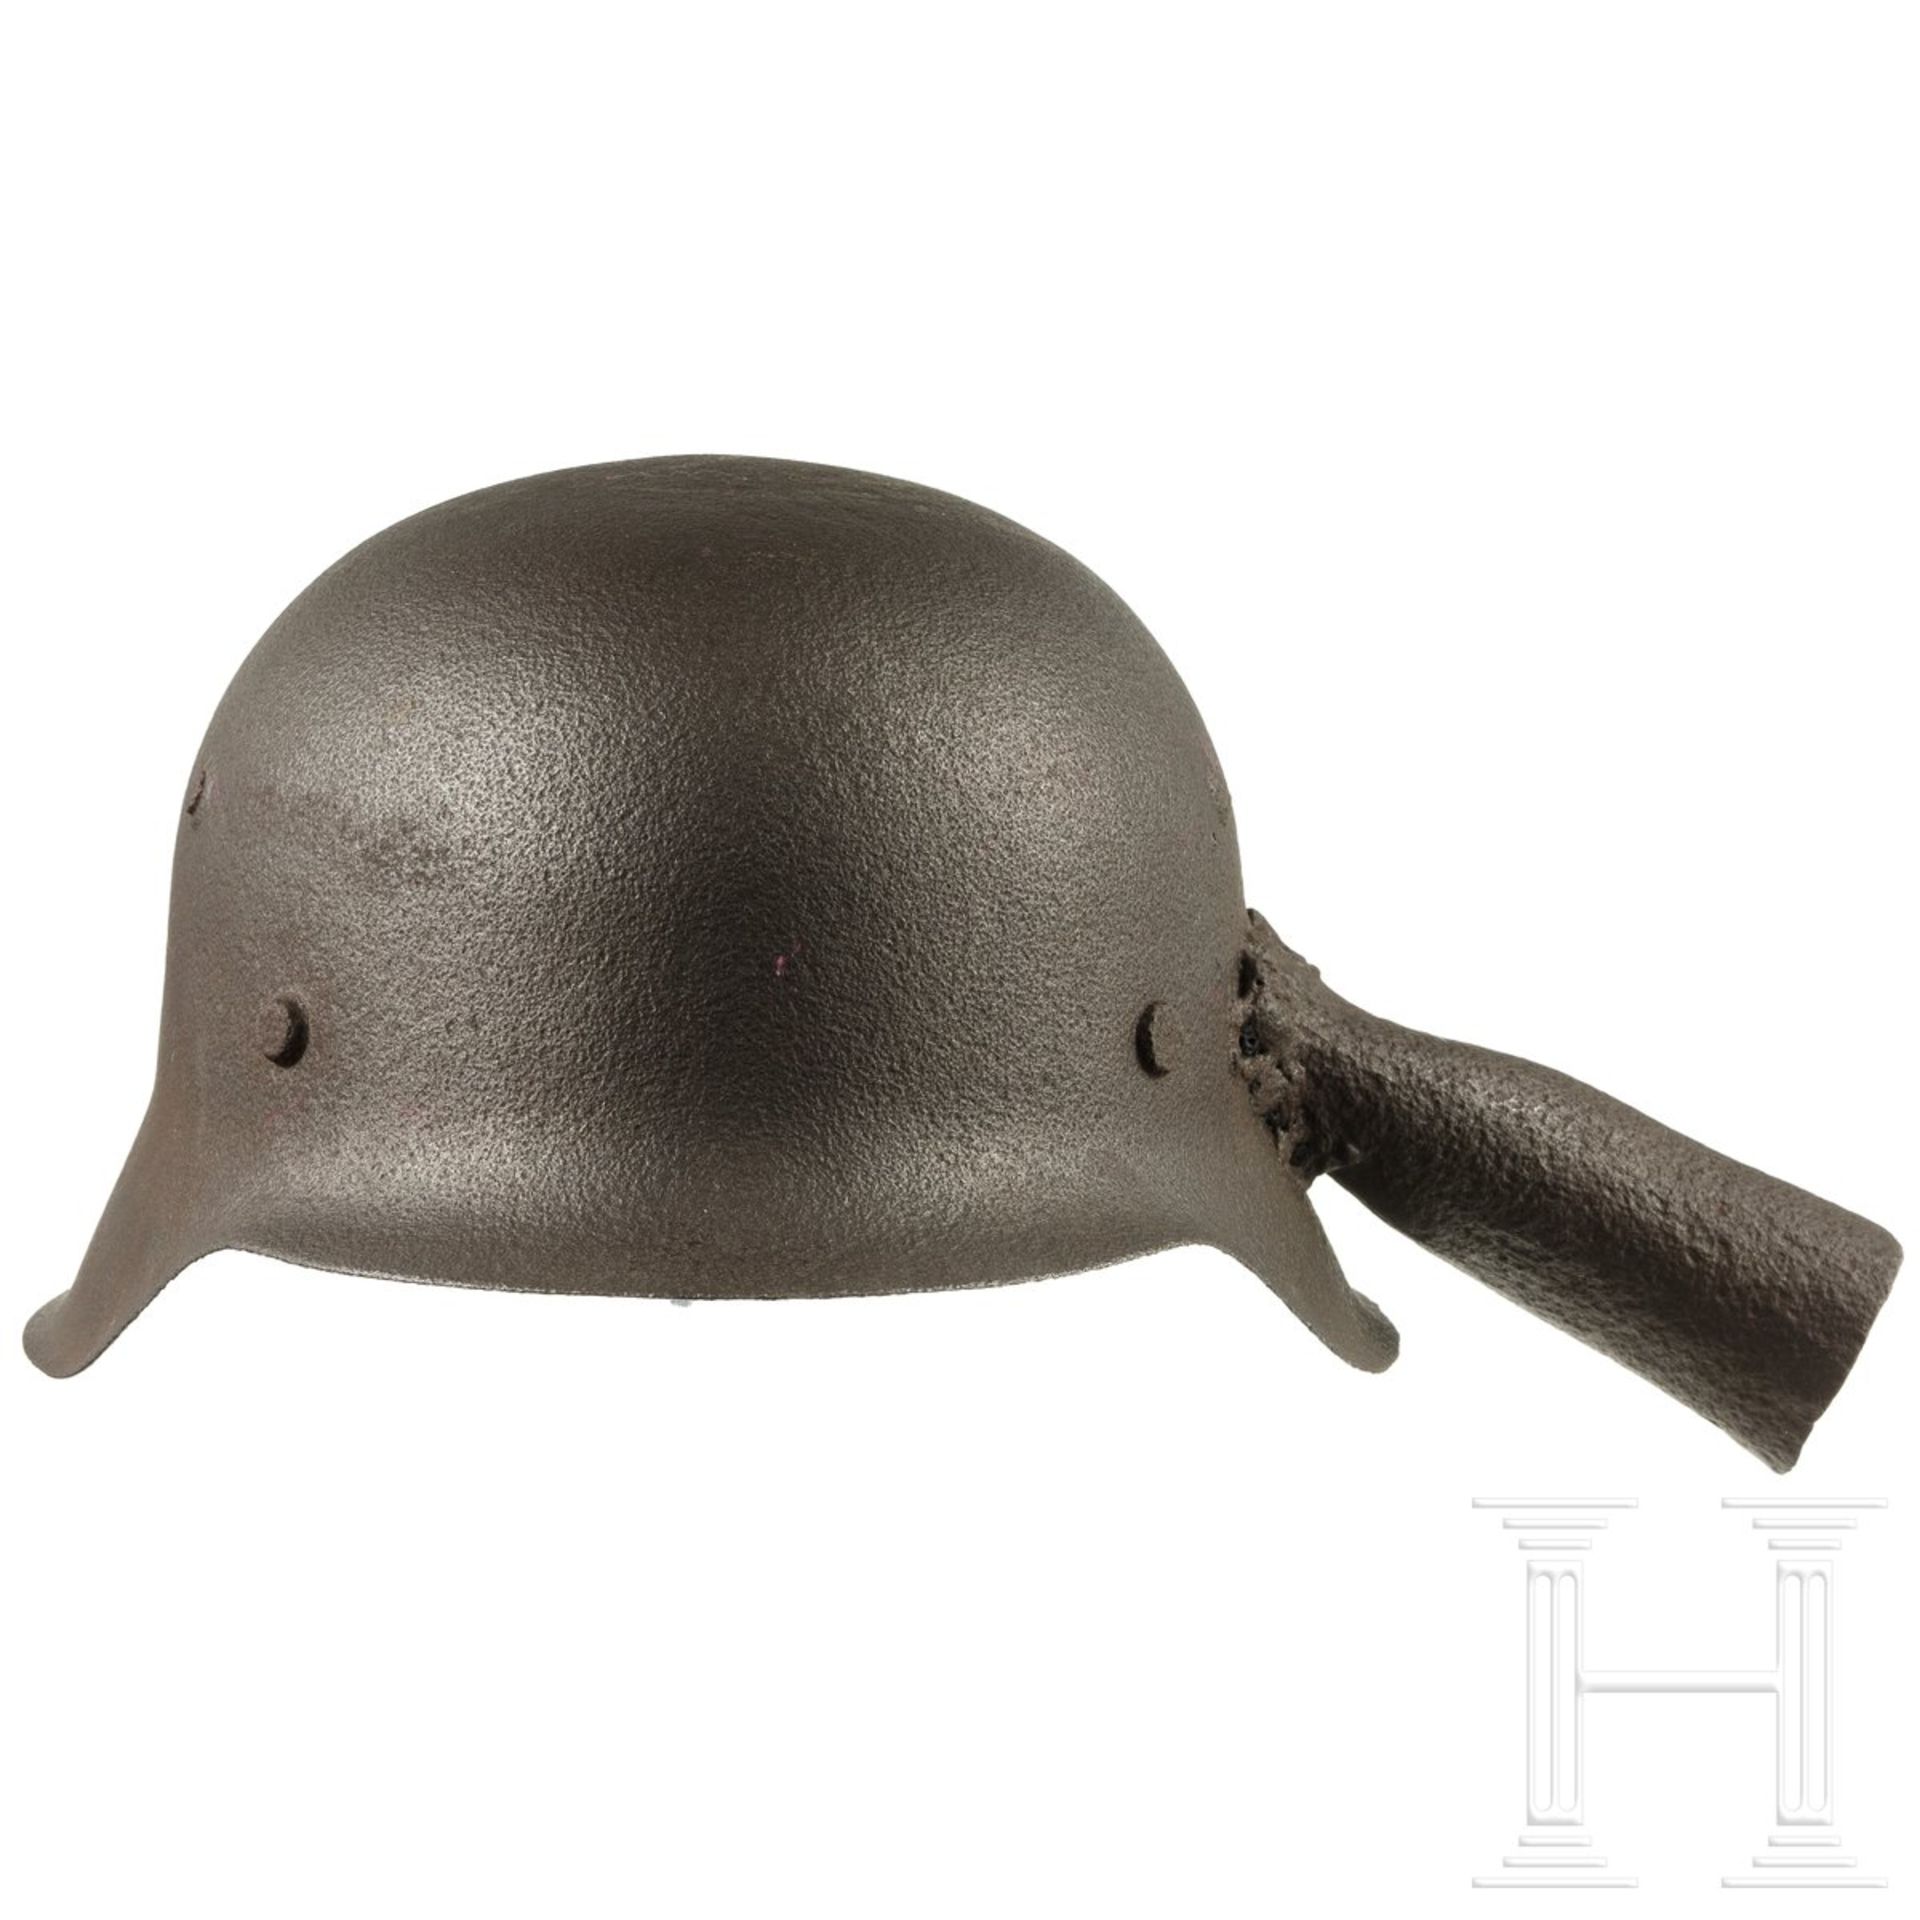 Stahlhelm M 42, umgearbeitet zu Kelle, deutsch, 1945/46 - Image 2 of 4